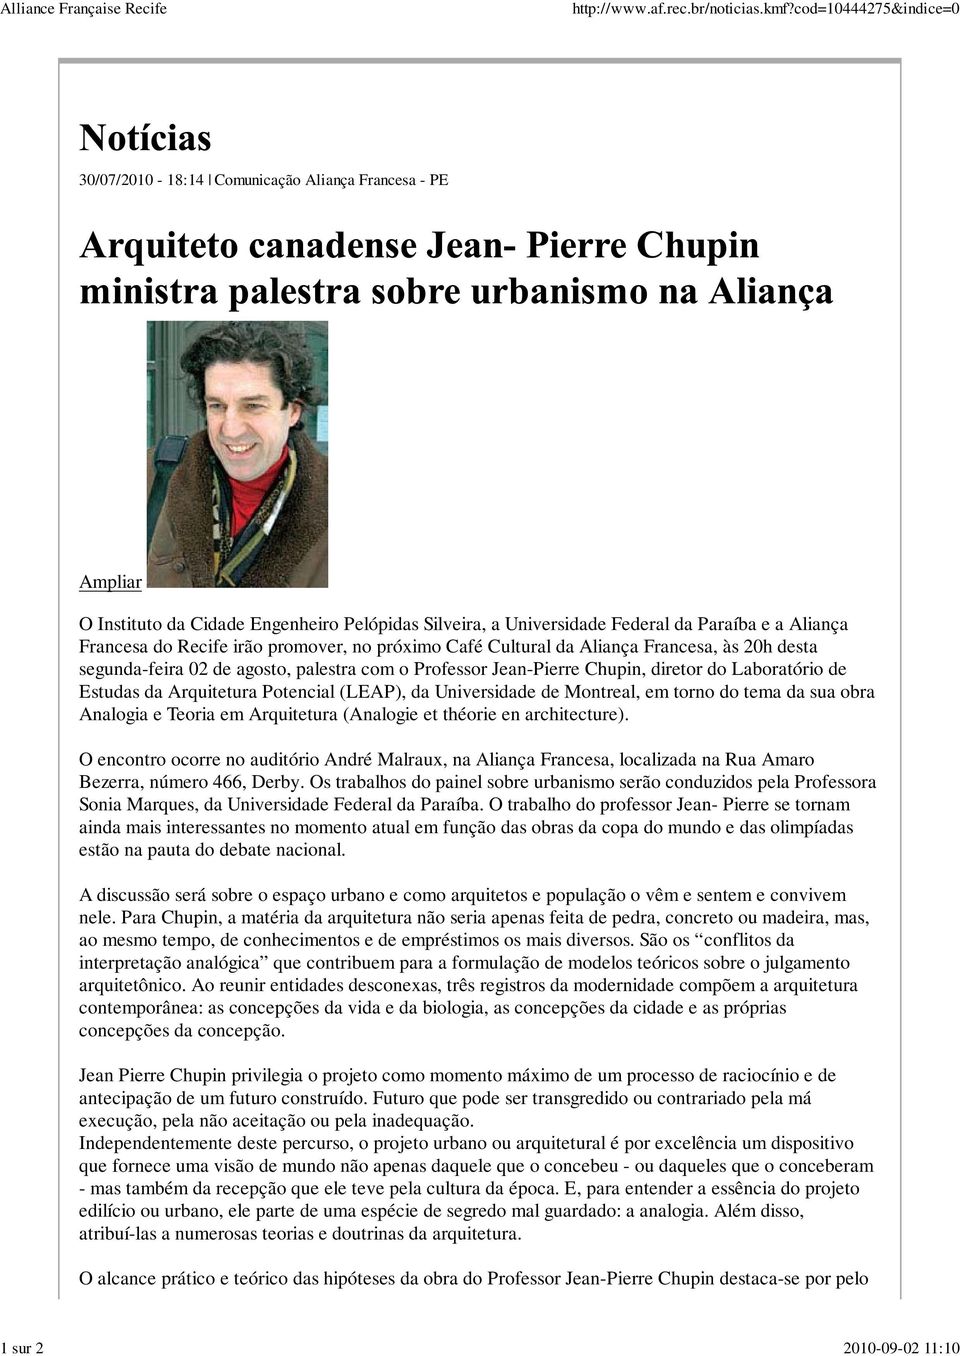 Aliança Francesa do Recife irão promover, no próximo Café Cultural da Aliança Francesa, às 20h desta segunda-feira 02 de agosto, palestra com o Professor Jean-Pierre Chupin, diretor do Laboratório de